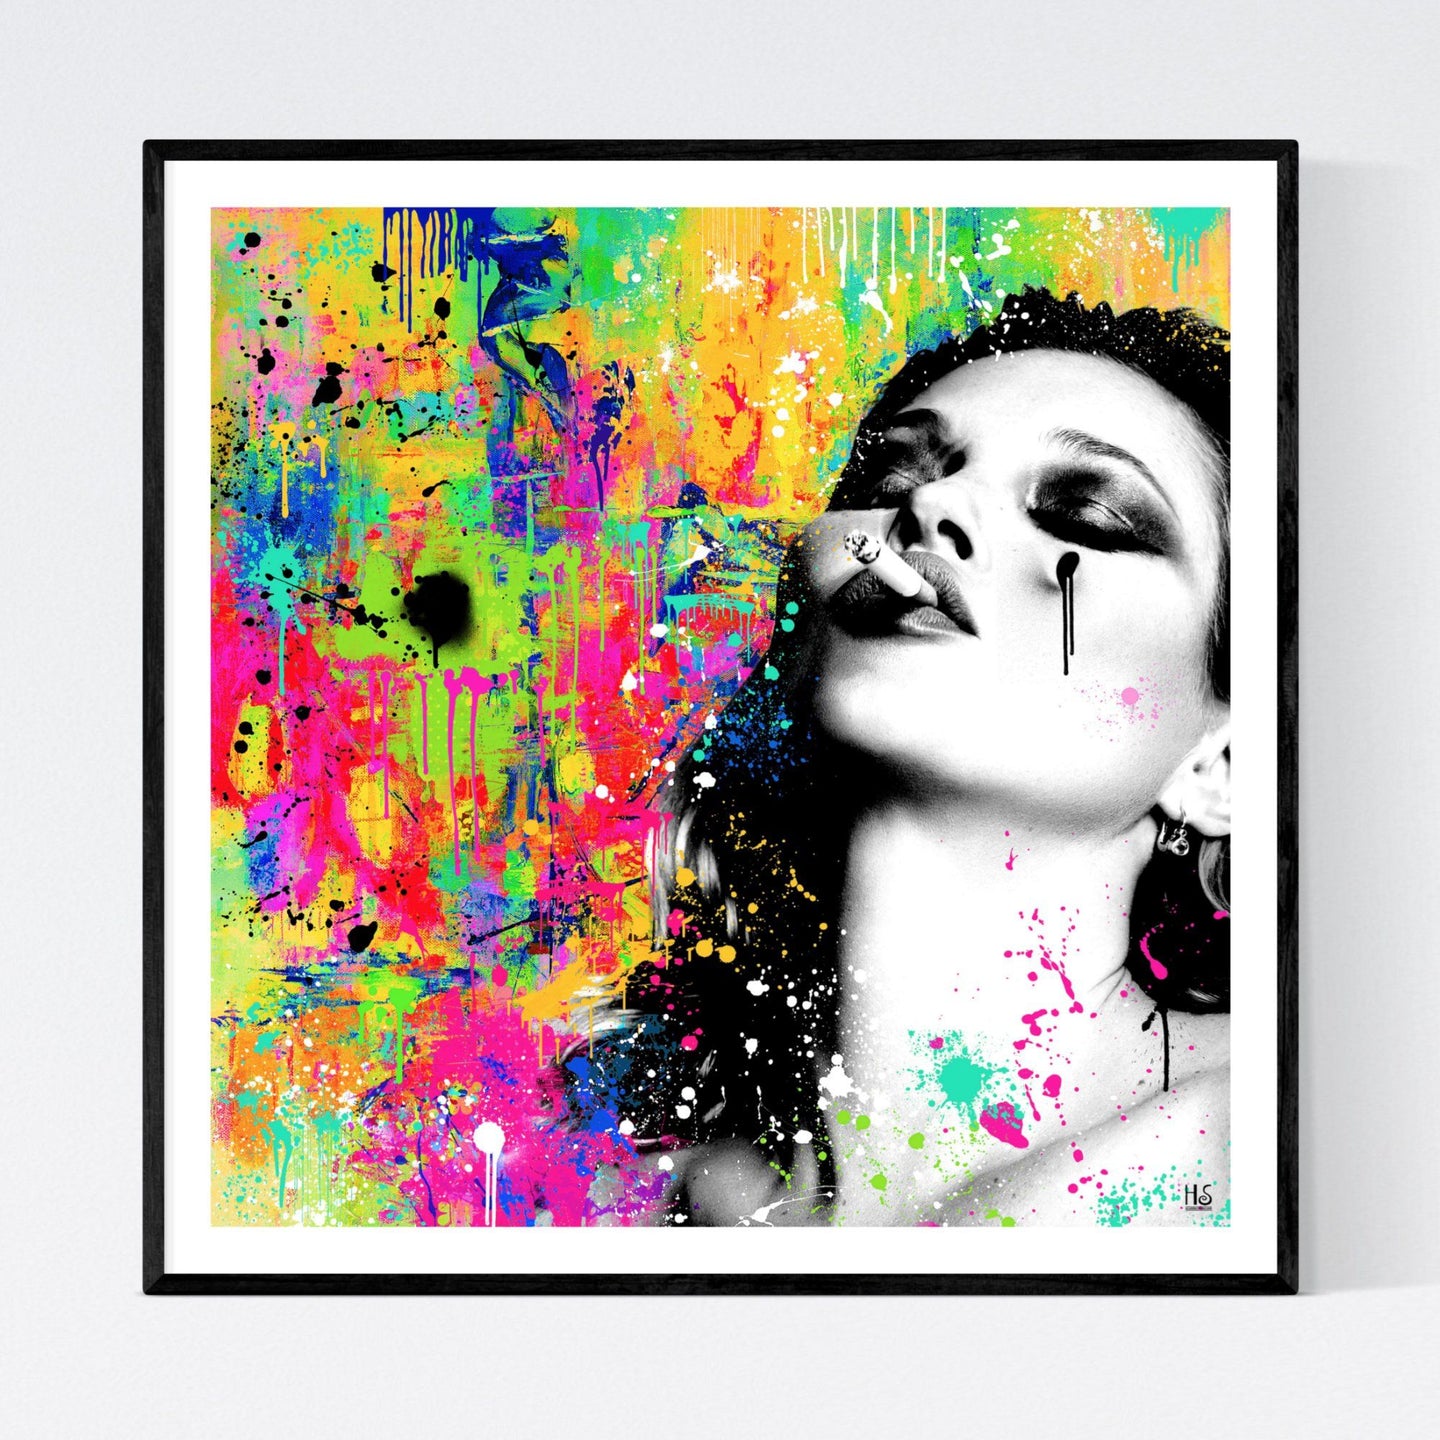 Smoking Kate - moderne pop art kunst, der viser et kontrastfyldt sort/hvidt poptræt af den engelske supermodel Kate Moss med lukkede øjne og en cigaret i munden. Baggrunden er abstrakt og meget kulørfyldt med masser af løbende maling, malerstænk og -klatter - af billedkunstner og pop artist Helt Sort